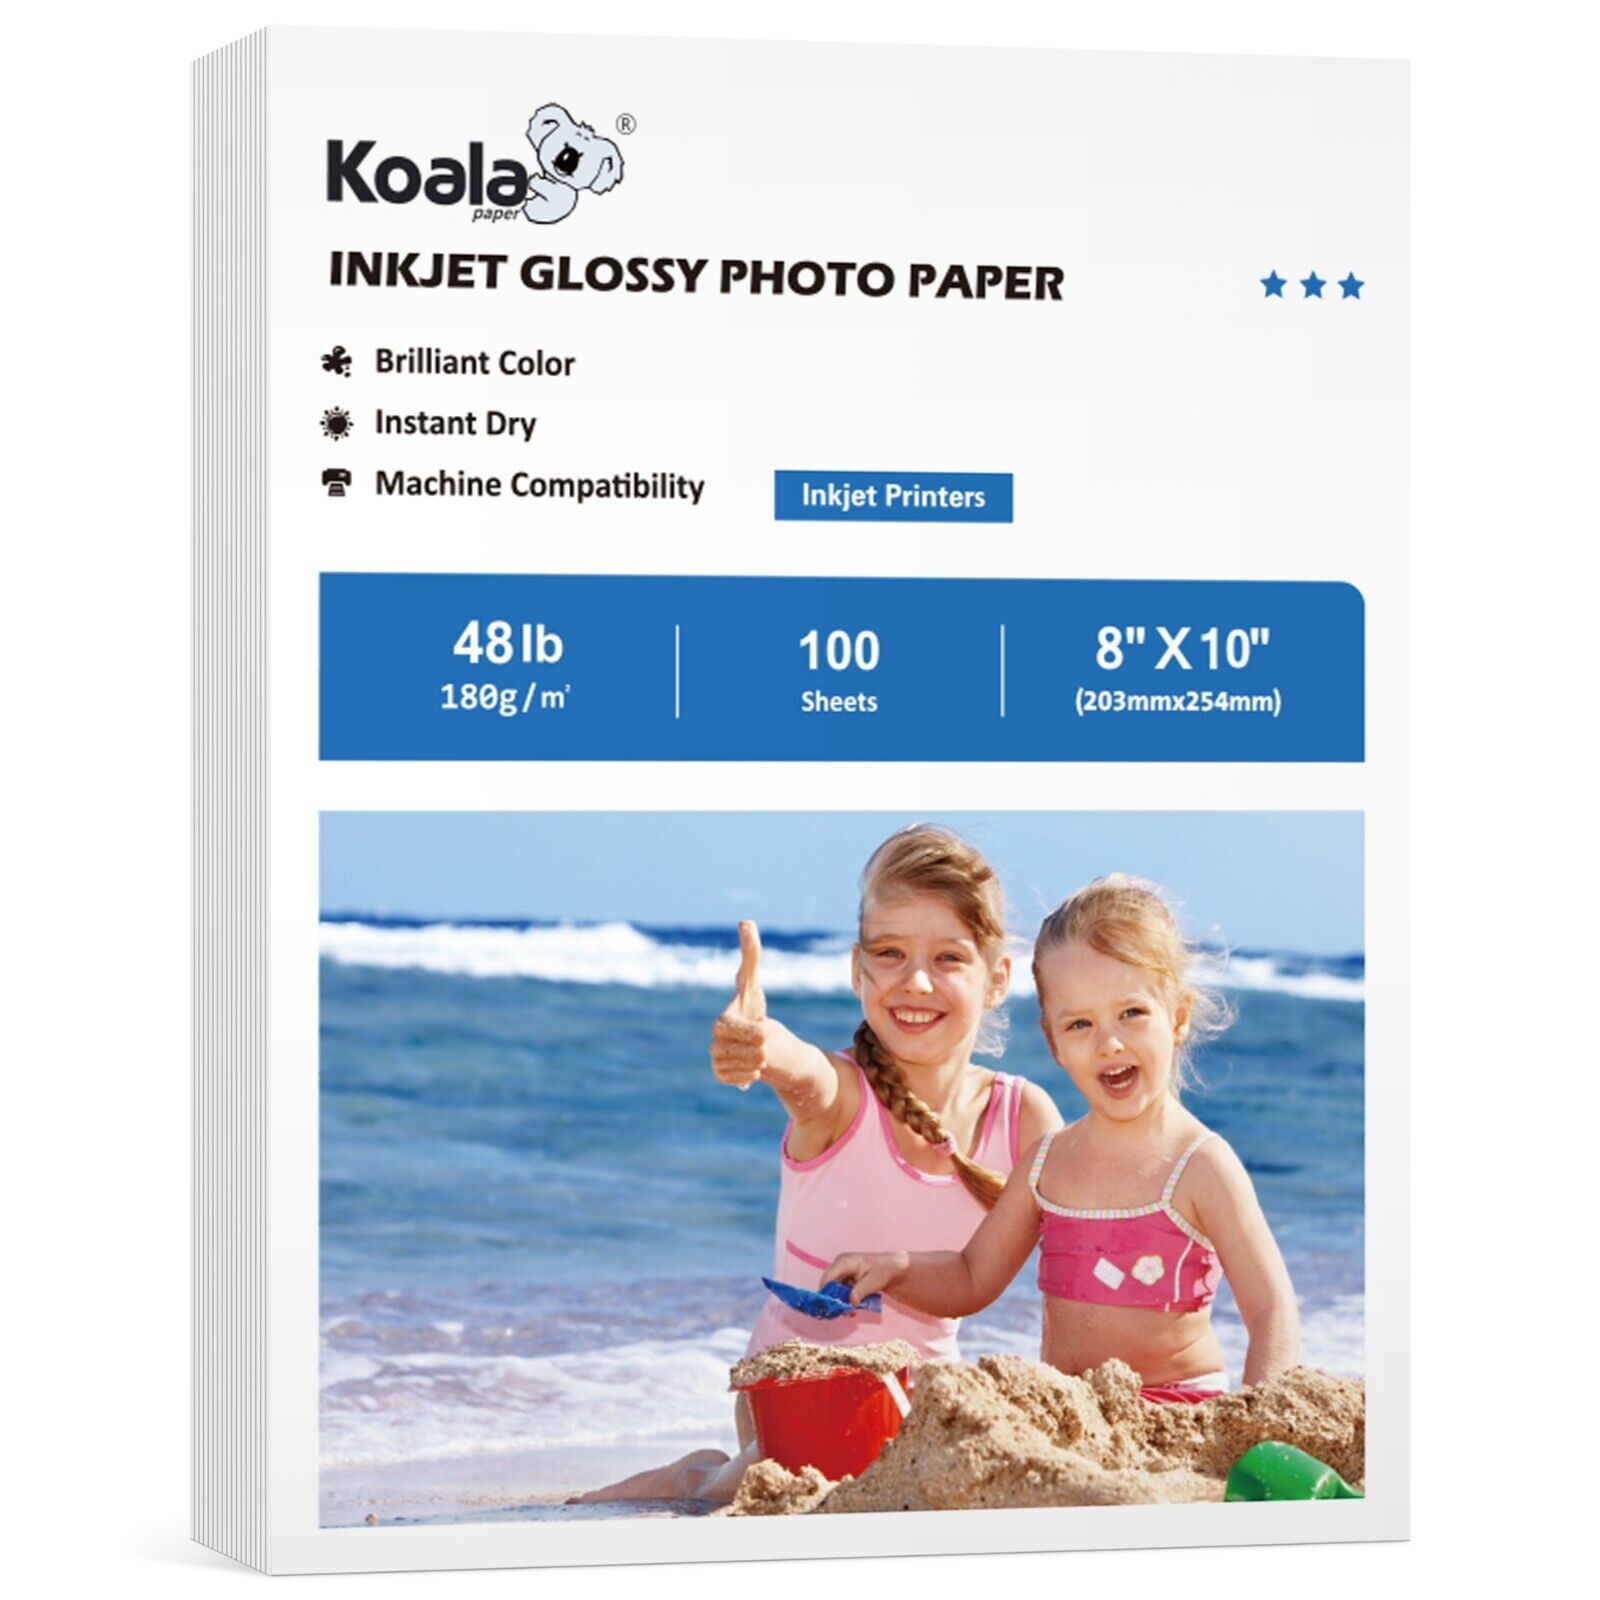 Lot 100-500 PK Koala Premium Photo Paper 8x10 Glossy 48lb Inkjet Picture Paper